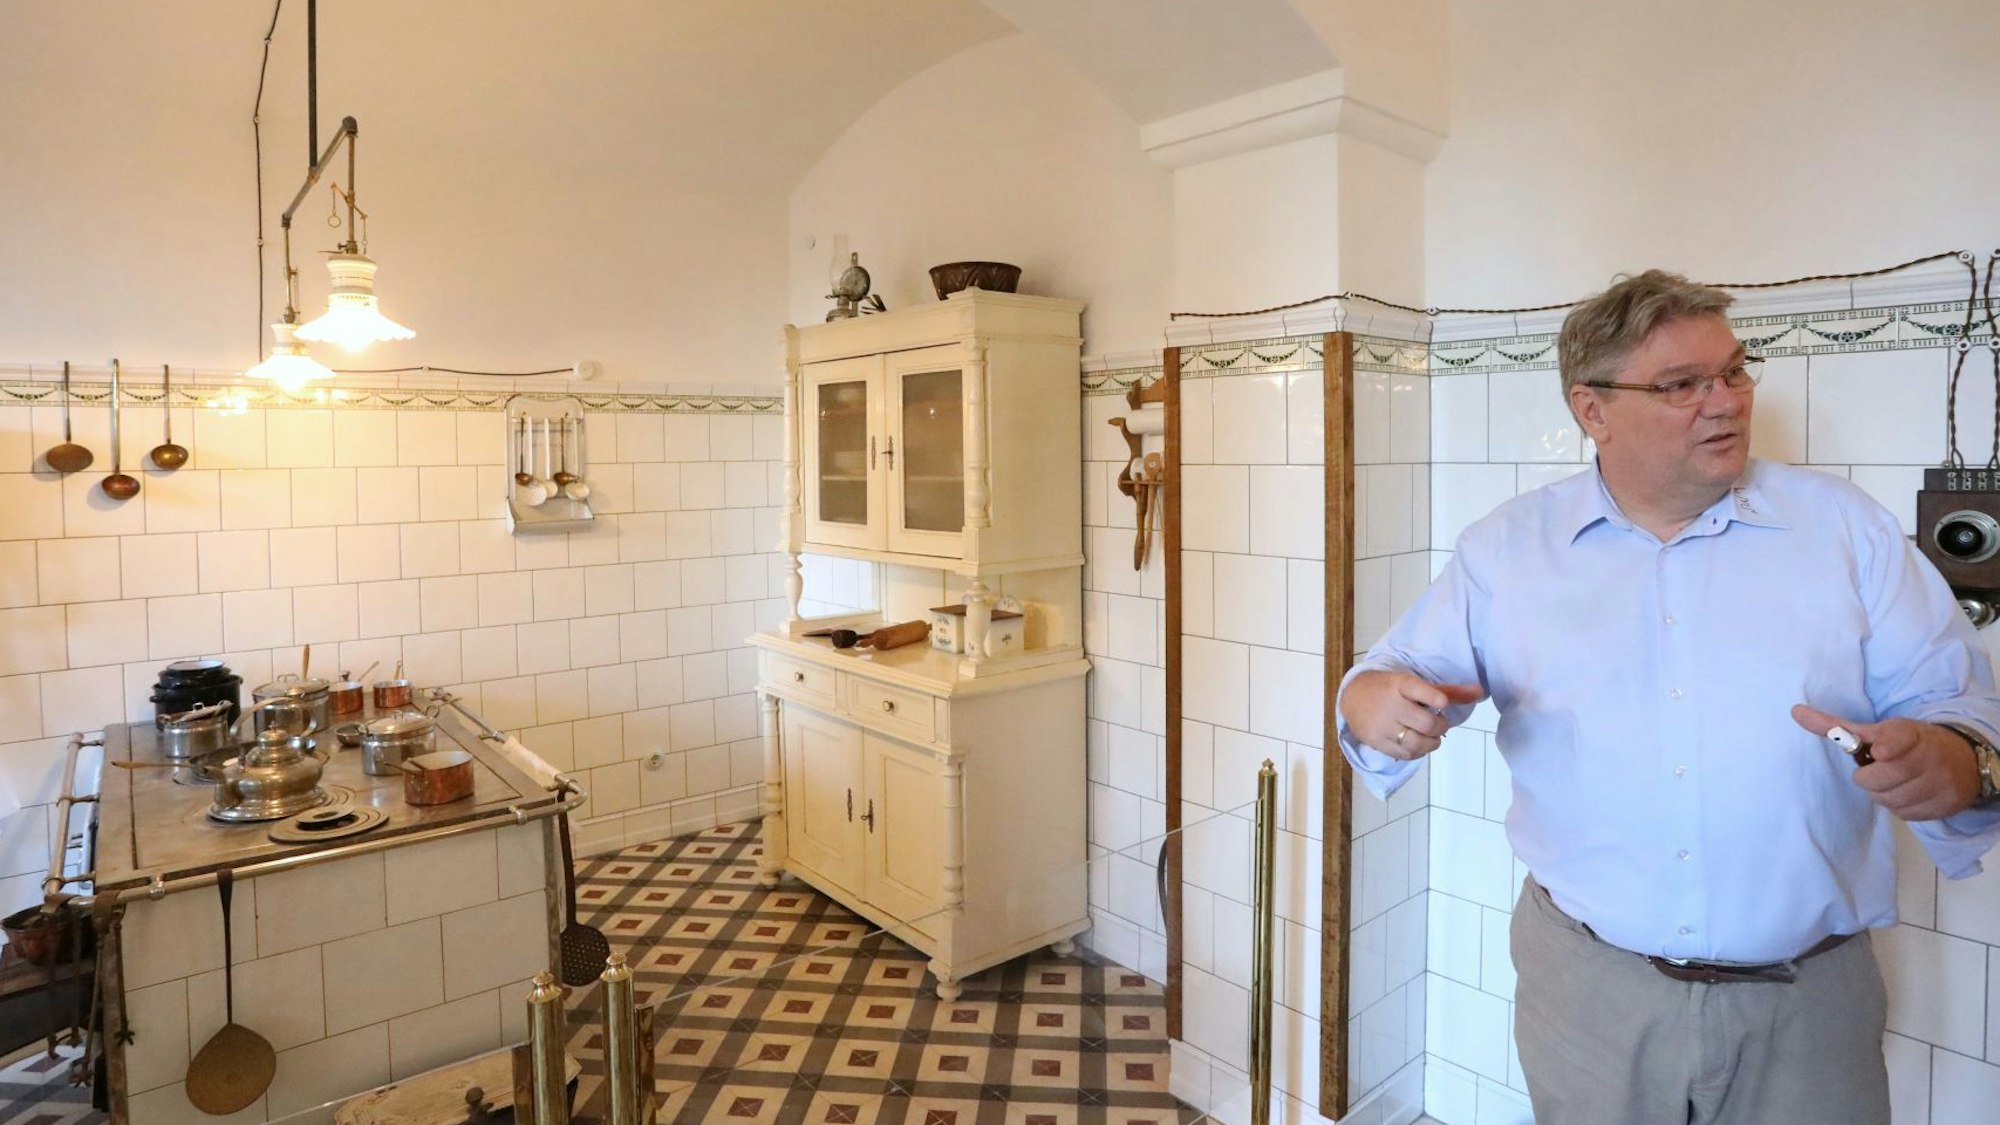 Ein Mann steht in einem Raum mit gefliesten Wänden. In der Küche stehen ein alter Herd und ein alter Küchenschrank,